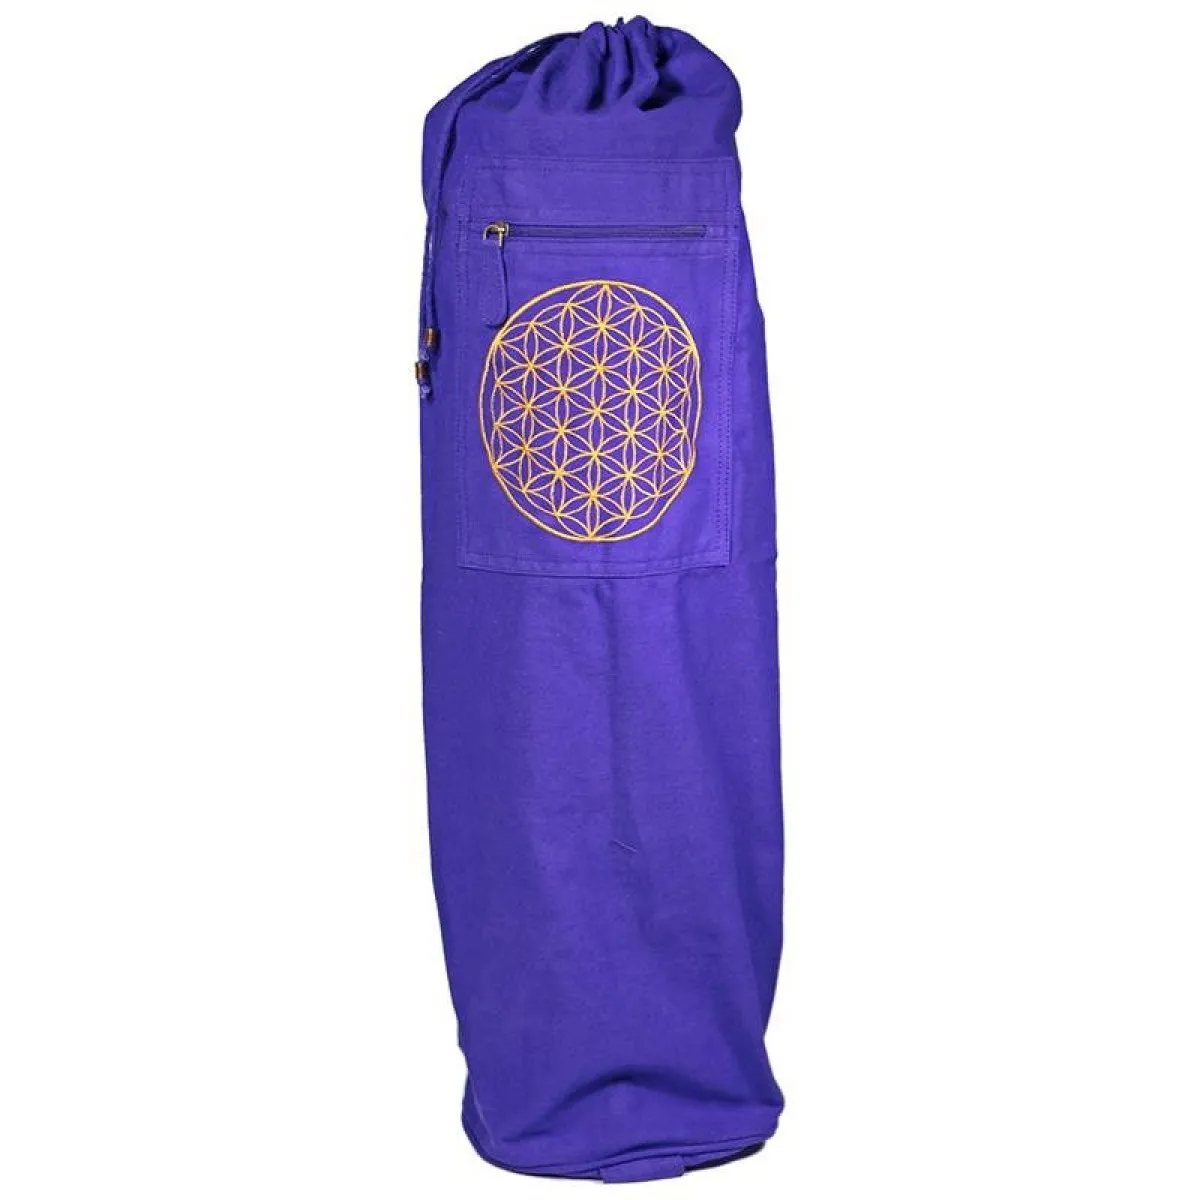 Bolsa para esterilla de yoga violeta con flor de la vida en oro 74x19 cm